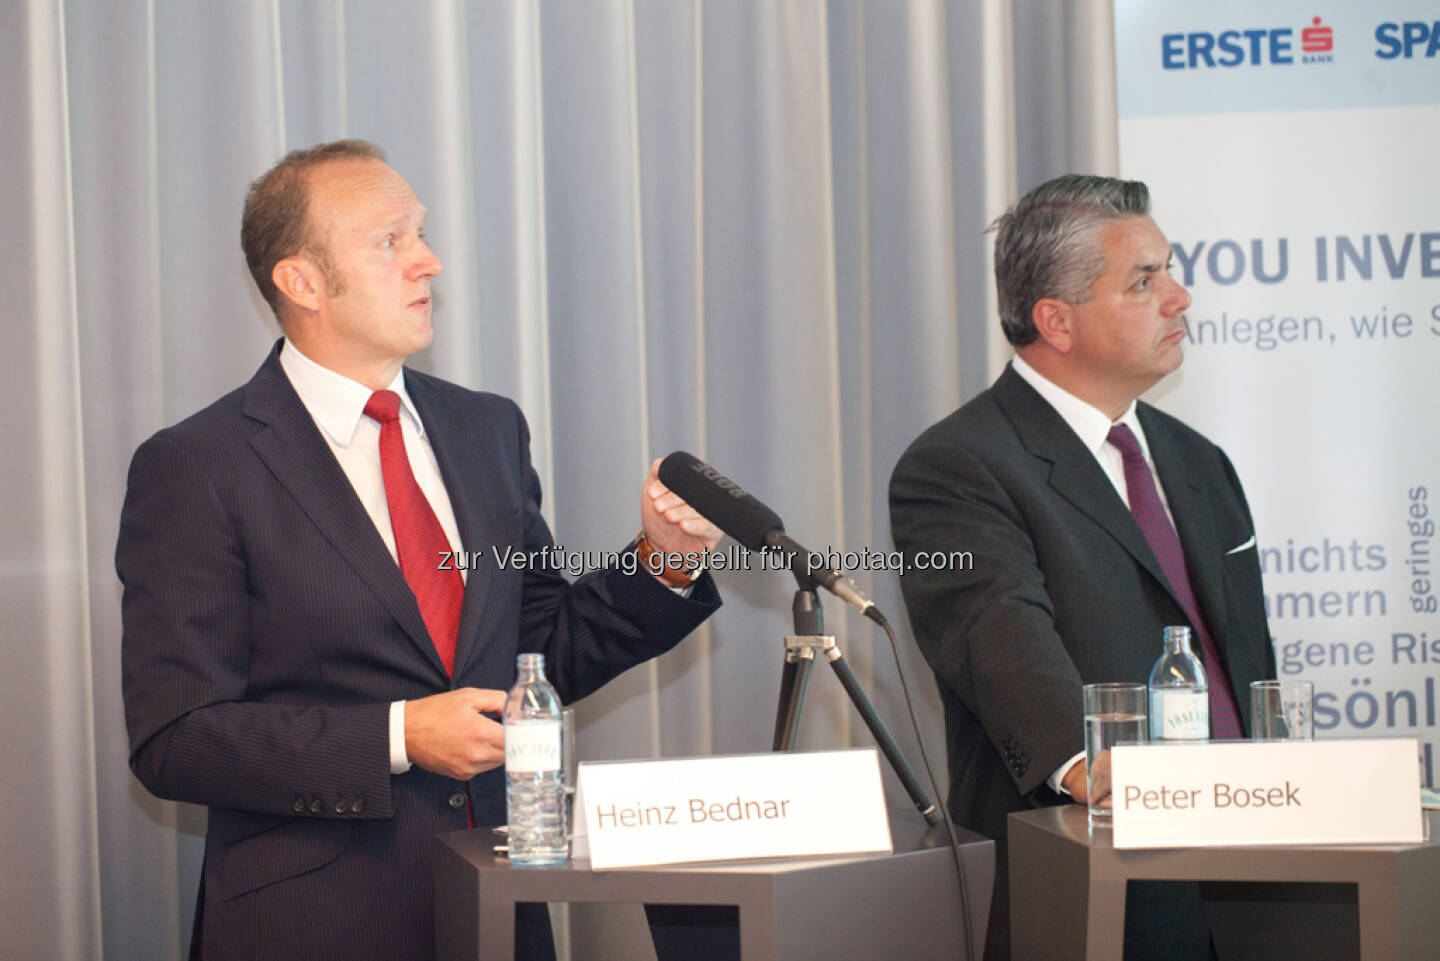 Heinz Bednar (Erste-Sparinvest) Vorstandsvorsitzender, Peter Bosek (Erste Bank Österreich Vorstand)